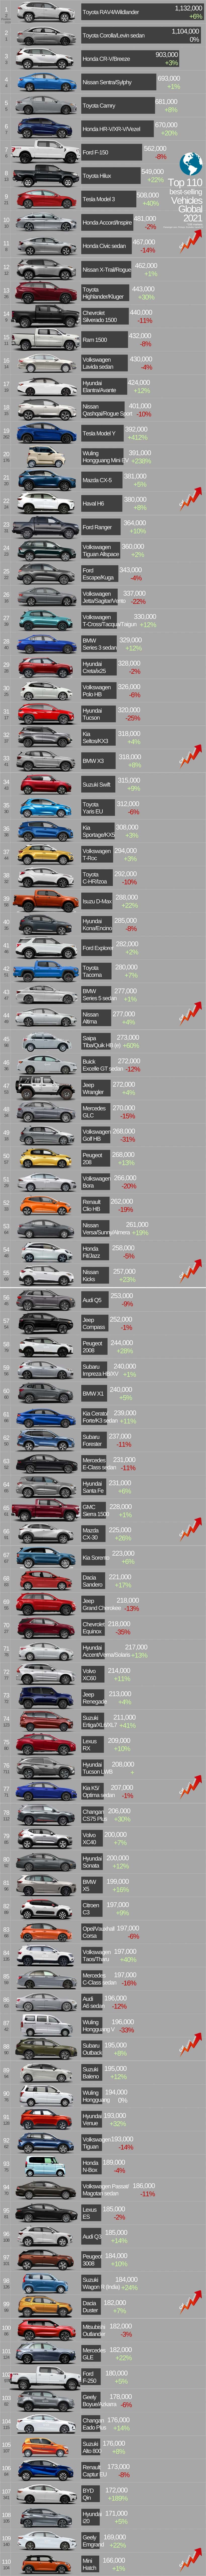 خودروهای پرفروش جهان در سال ۲۰۲۱